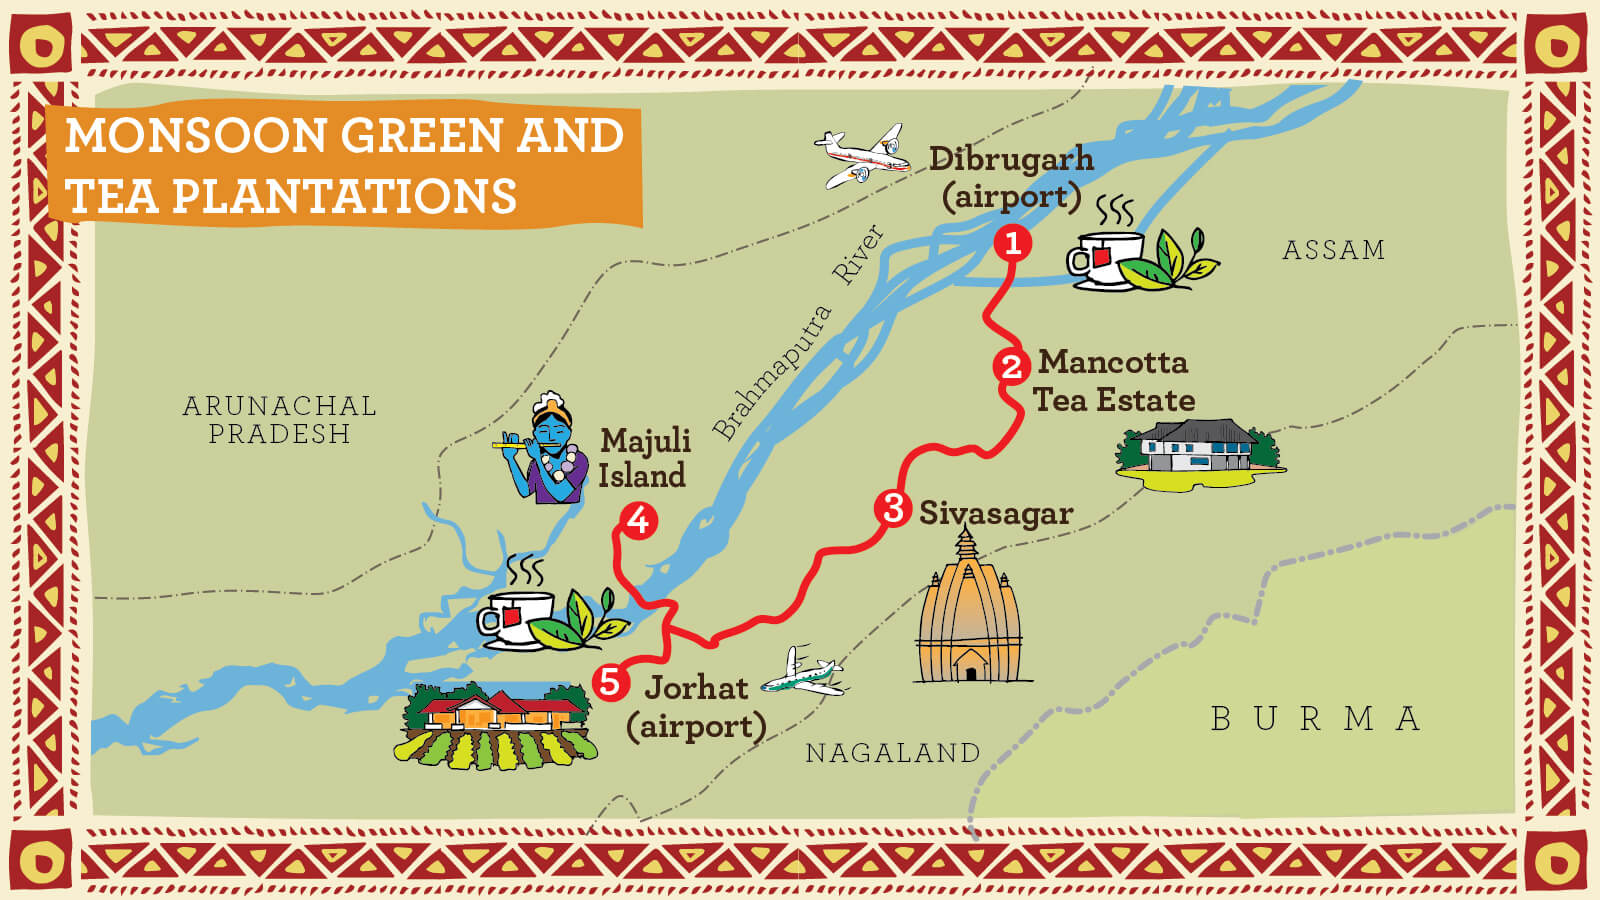 Assam Tea Plantation Tour and Travel - Route Map